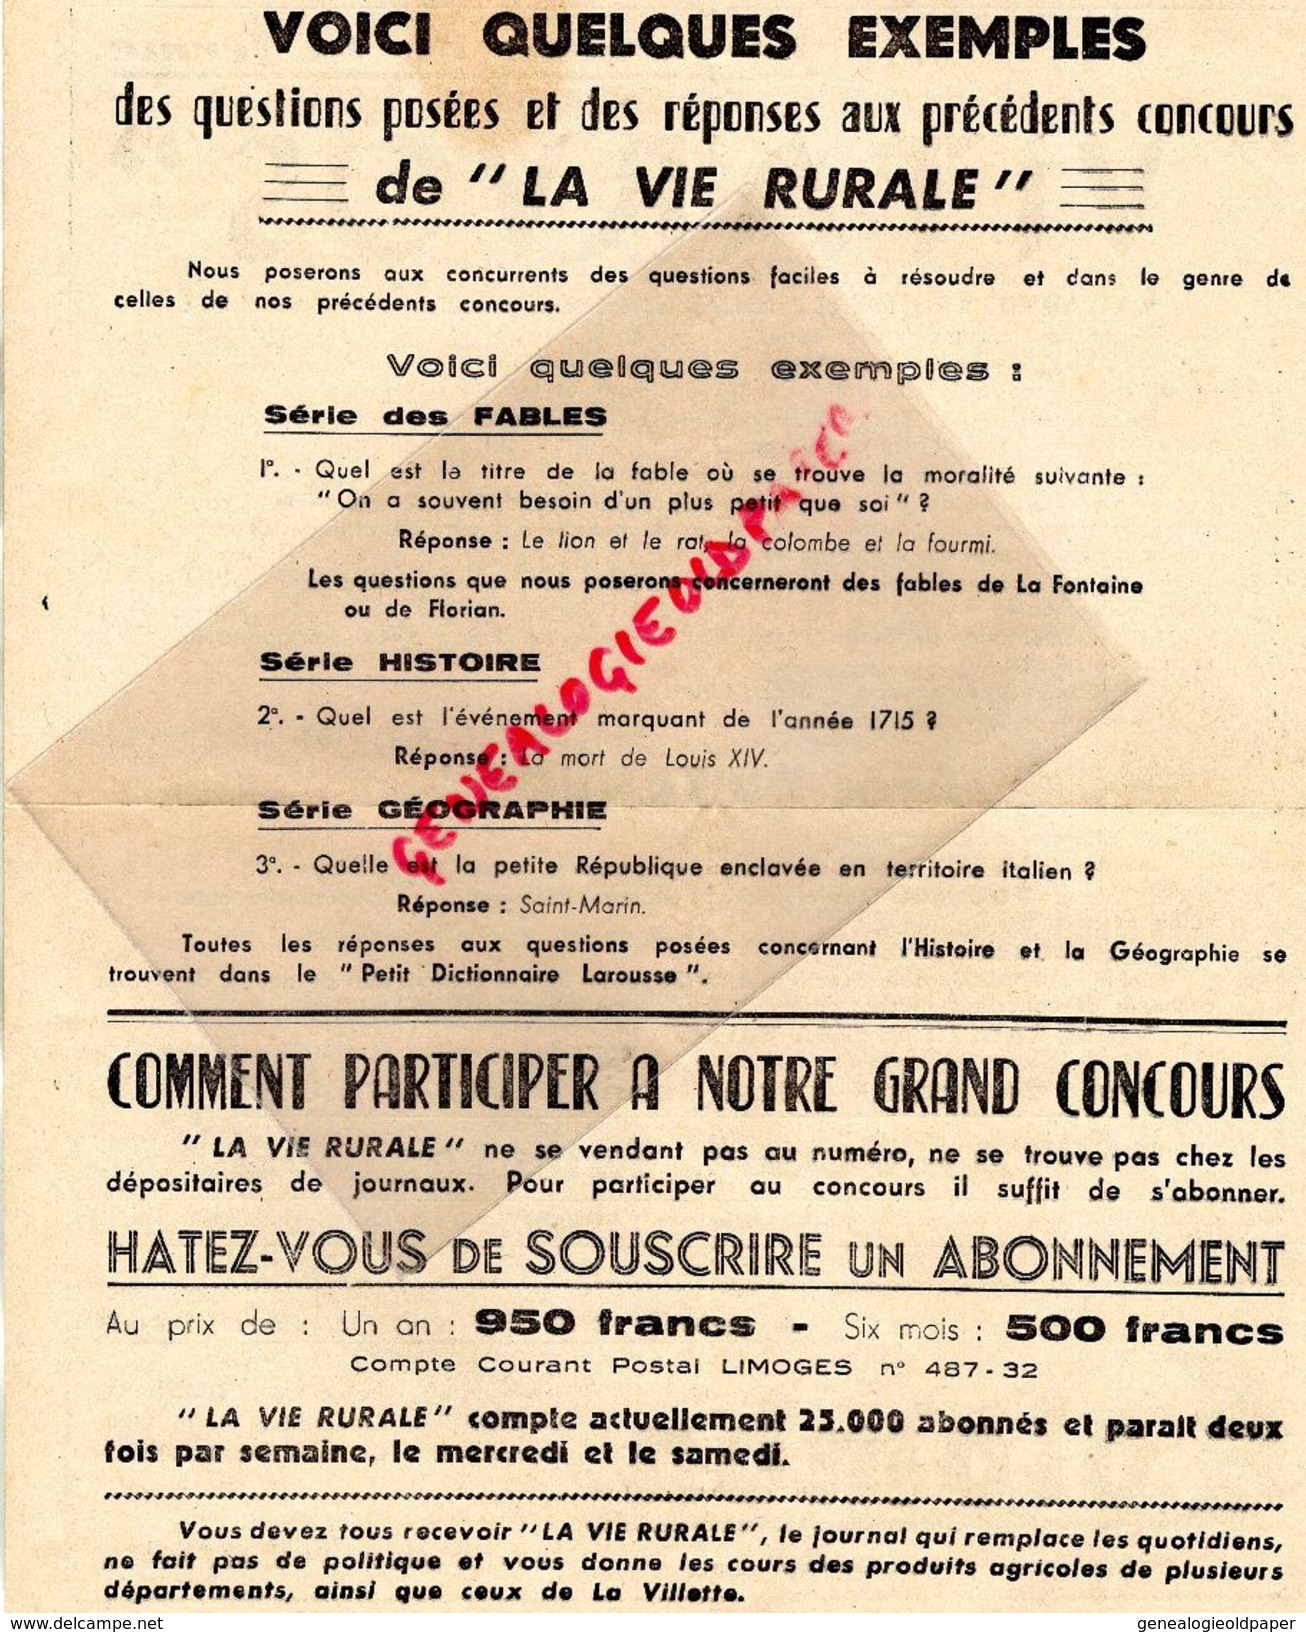 87- LIMOGES- LA VIE RURALE 26-11-1949- GRAND CONCOURS DES VEILLEES- 4 CV RENAULT-PAIRE DE BOEUFS-VELO MOTEUR BICYCLETTE - Cars